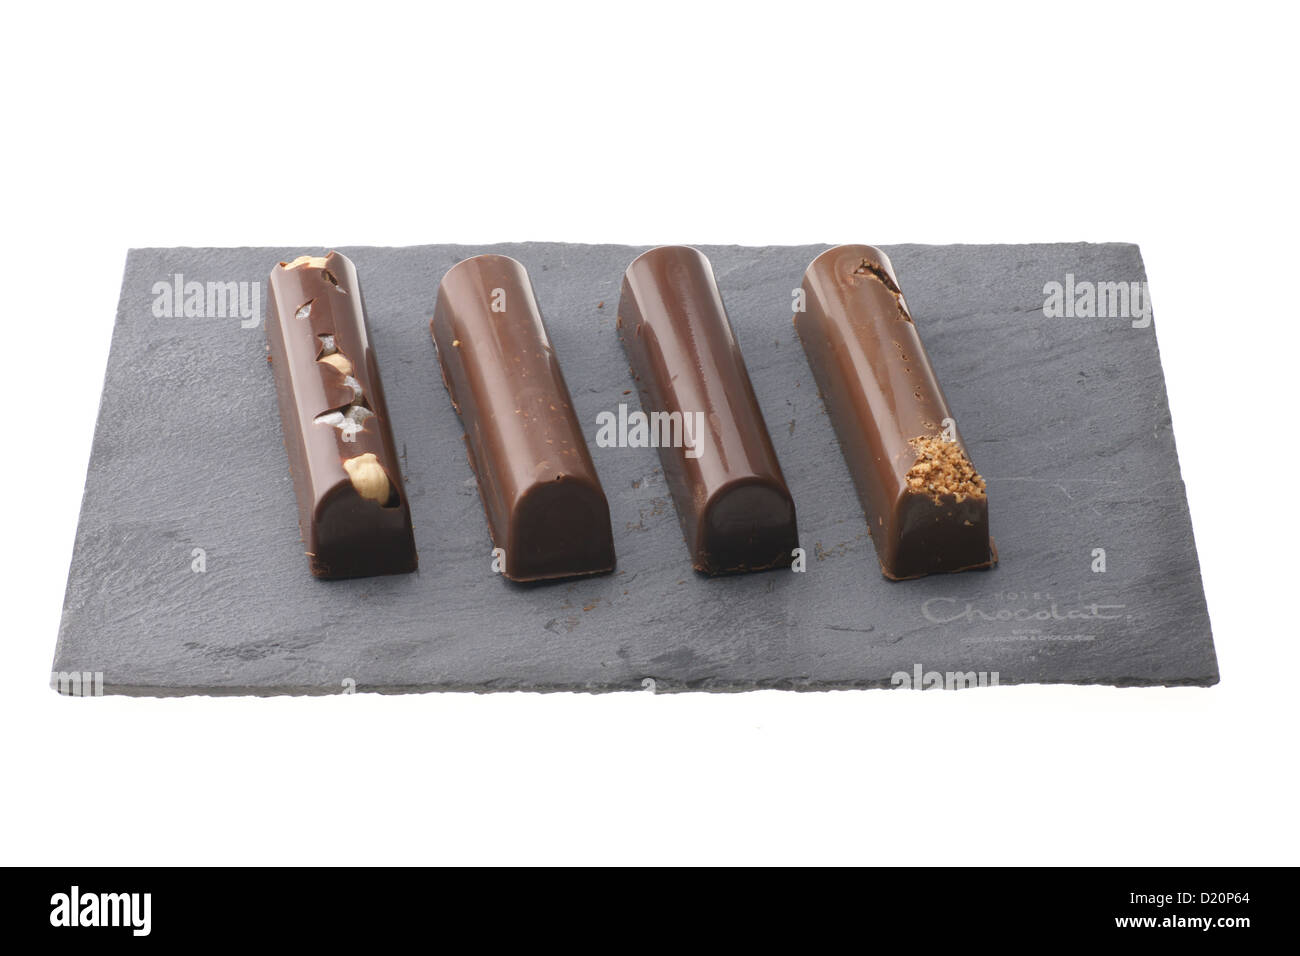 Hotel Chocolat, British coltivatore premium e cioccolatiere marca - manganelli venduto con una firma di ardesia solido tagliere. Foto Stock